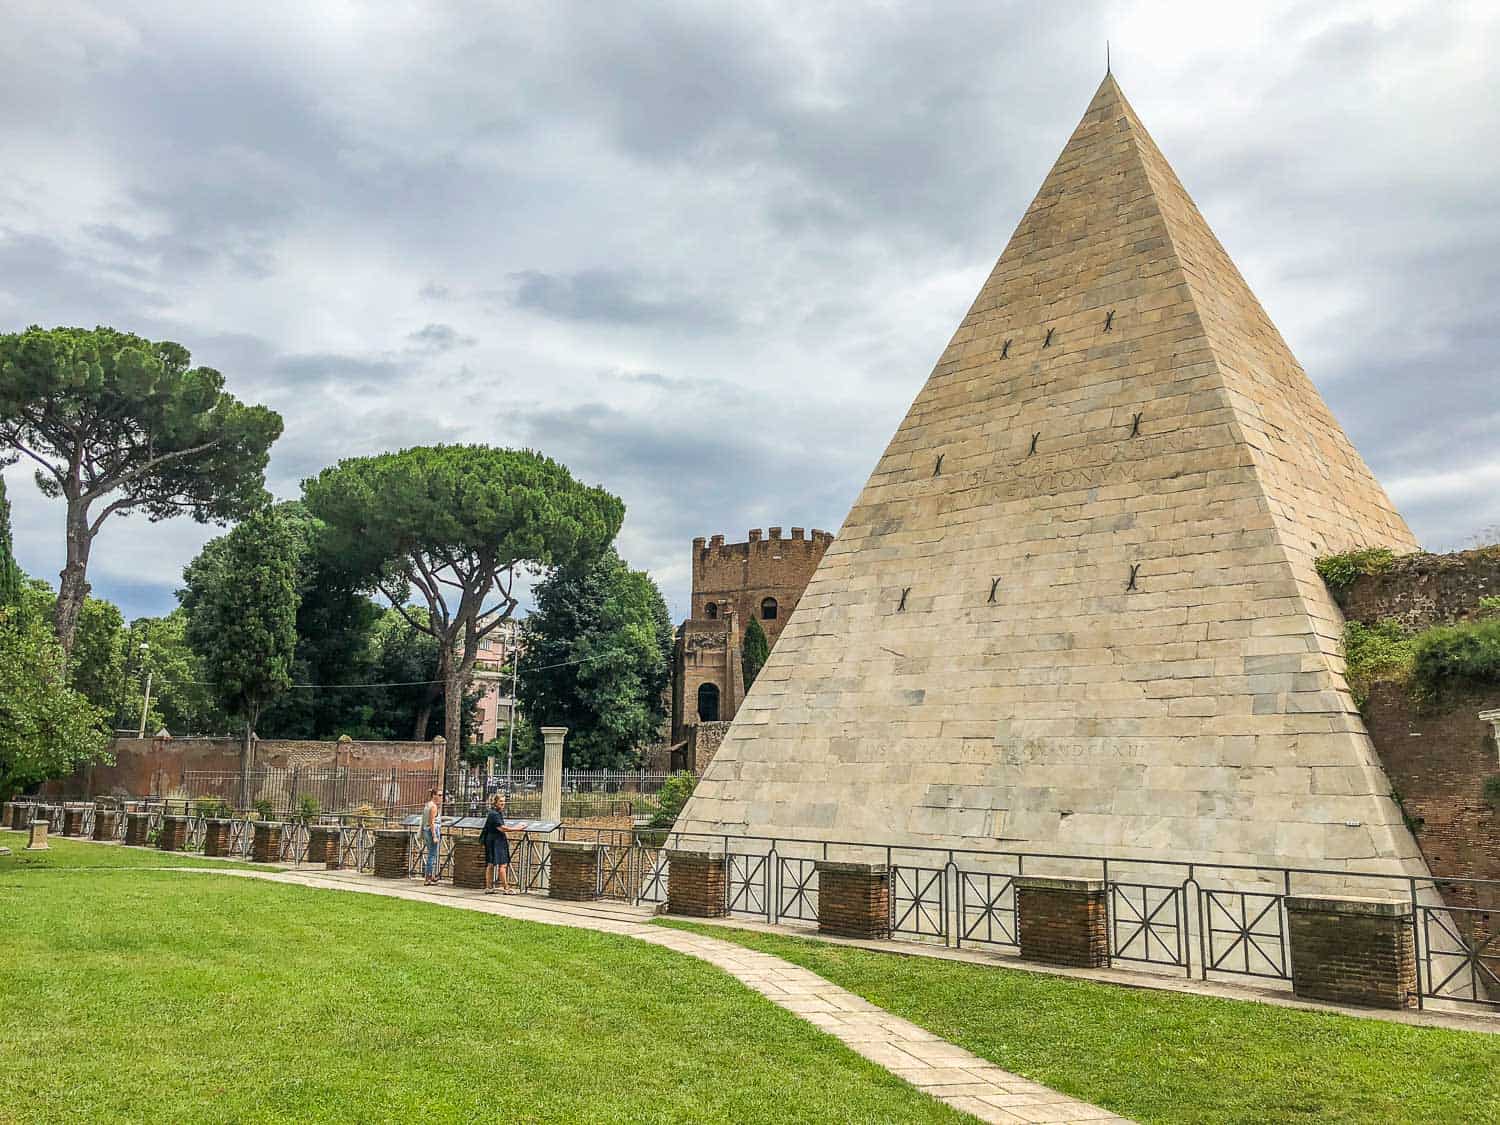 Testaccio Pyramid of Cestius in Rome, Italy from the non-Catholic cemetery